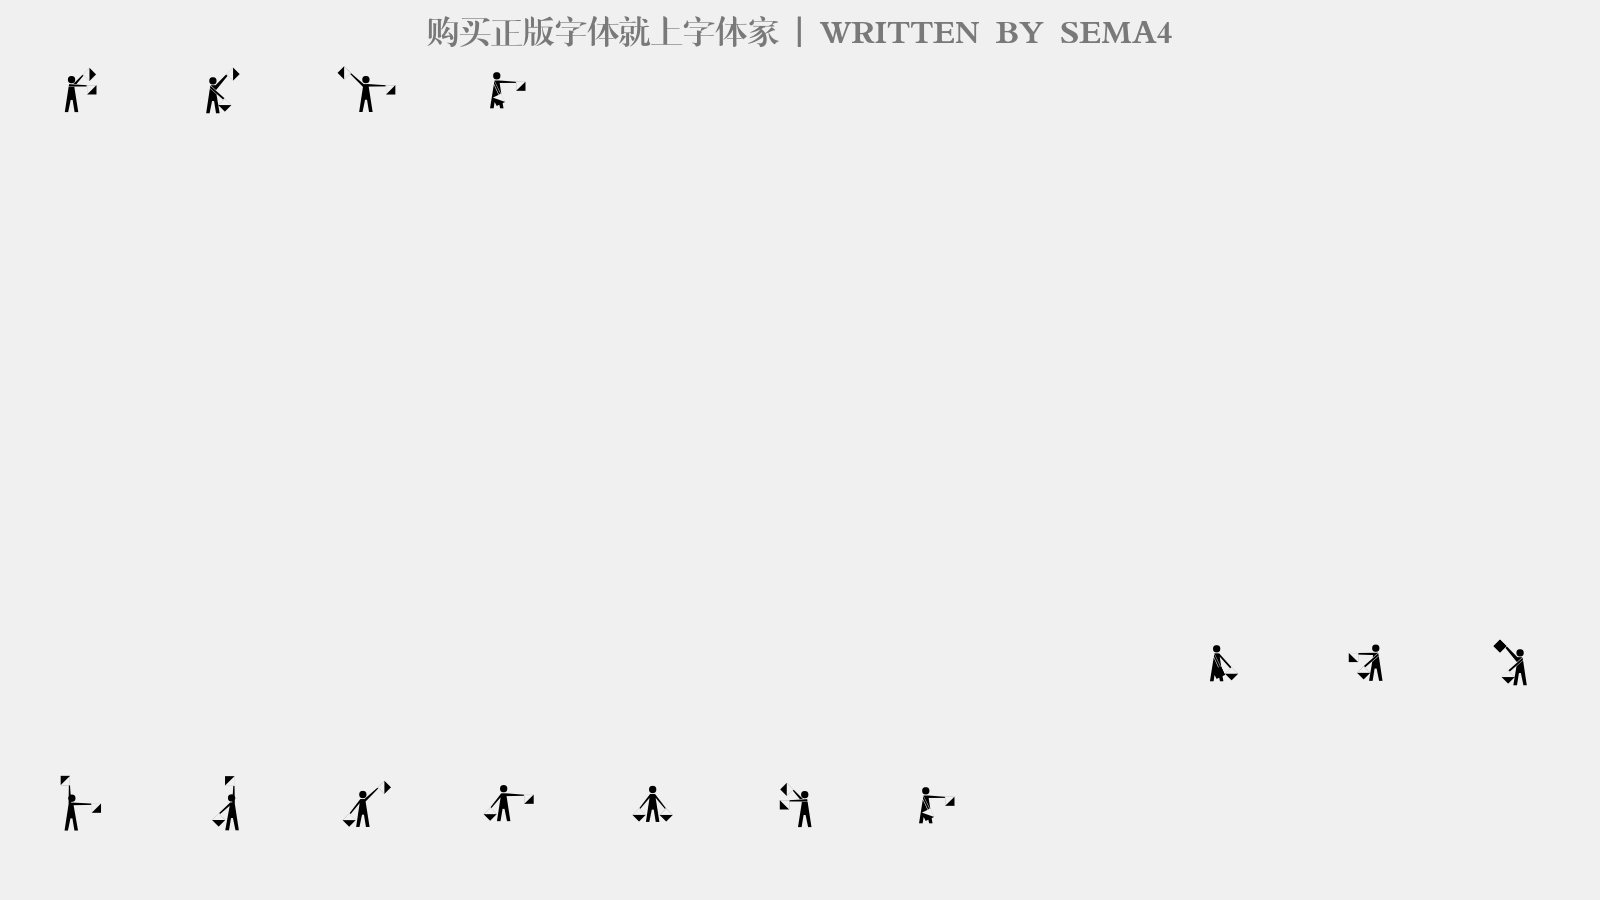 SEMA4 - 大写字母/小写字母/数字